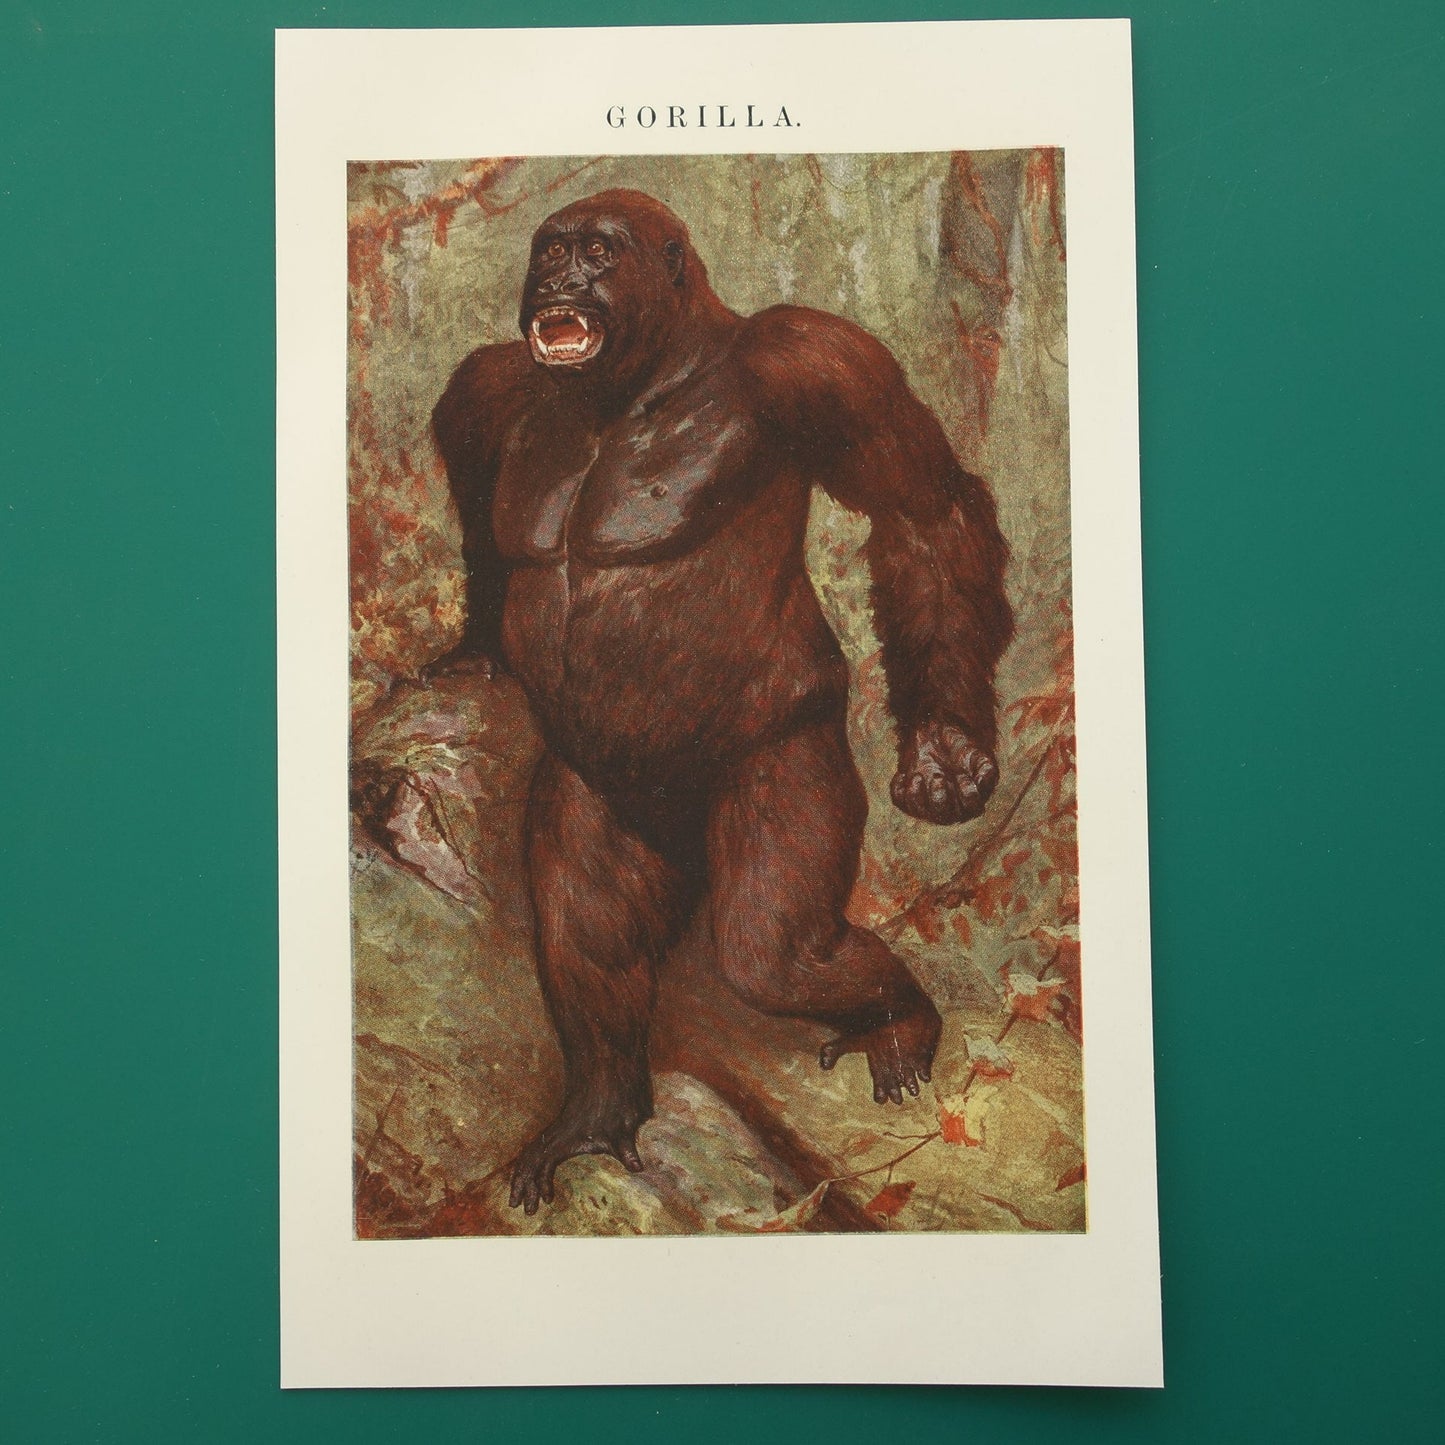 oude illustratie van een gorilla